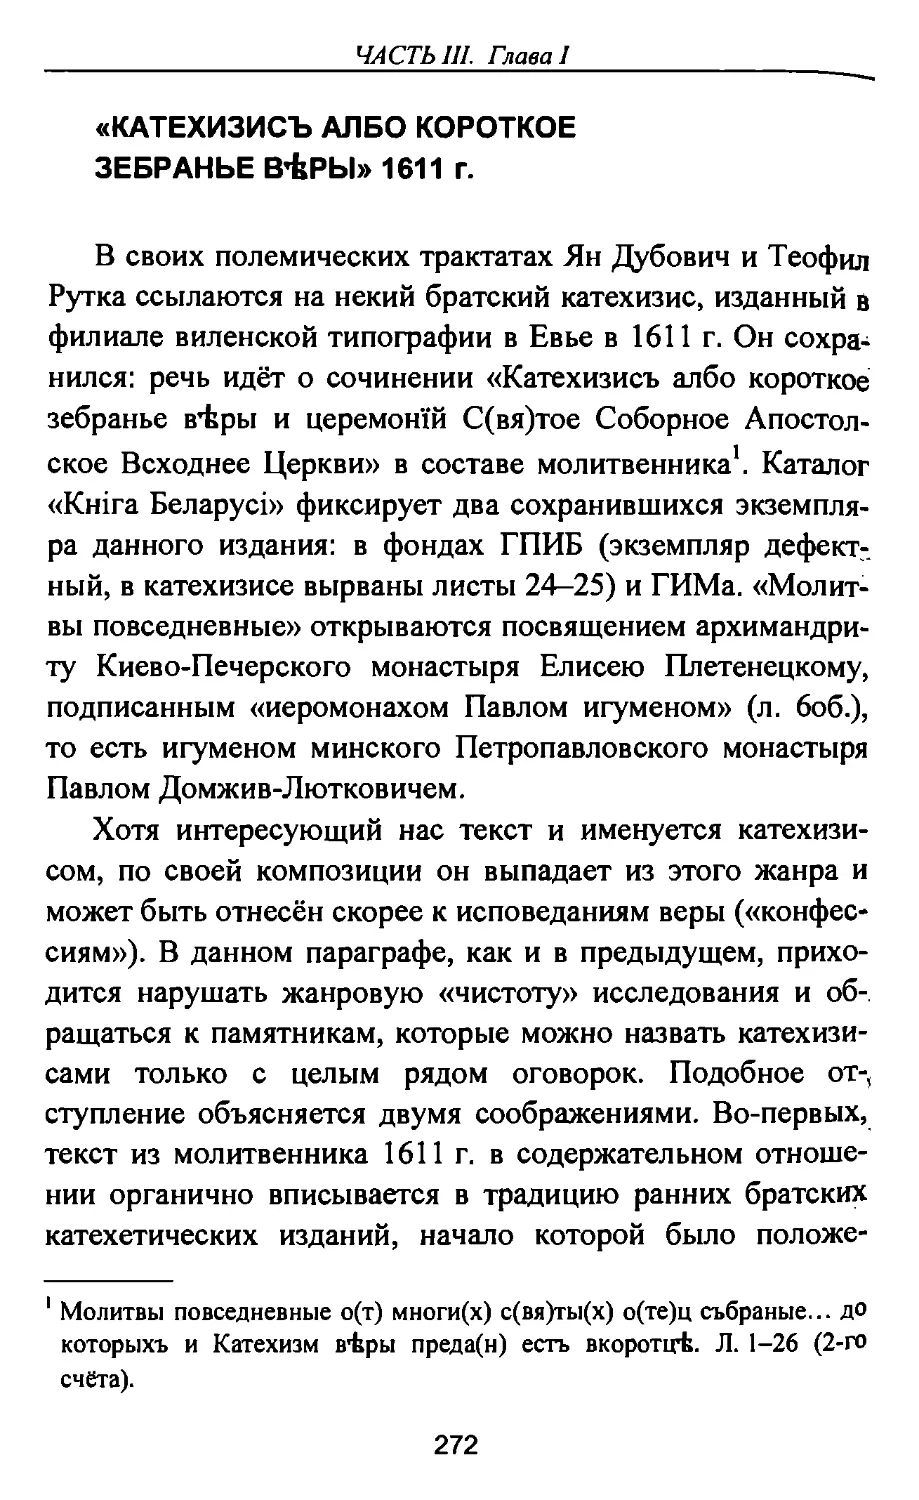 «Катехизисъ албо короткое зебранье вѣры» 1611 г.